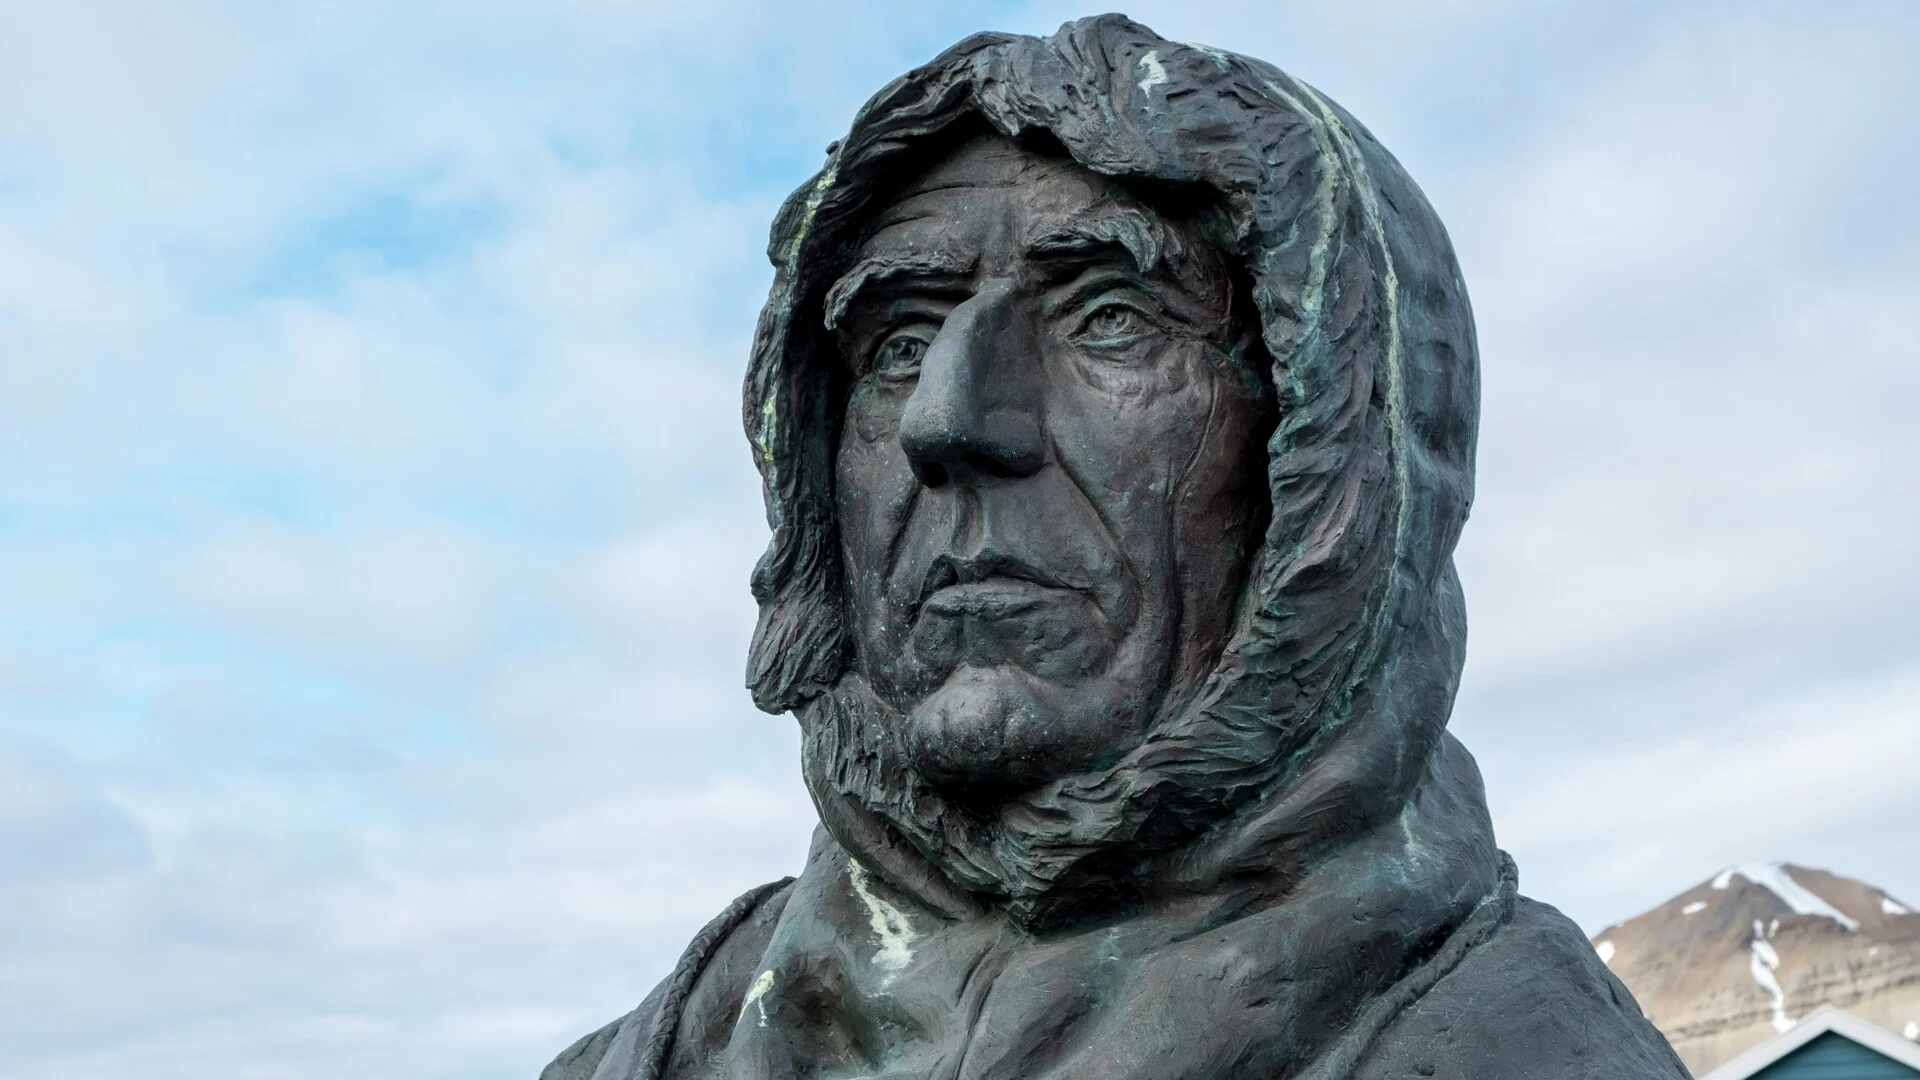 Roald Amundsen statue Ny Alesund Svalbard HGR 124210 Andrea Klaussner